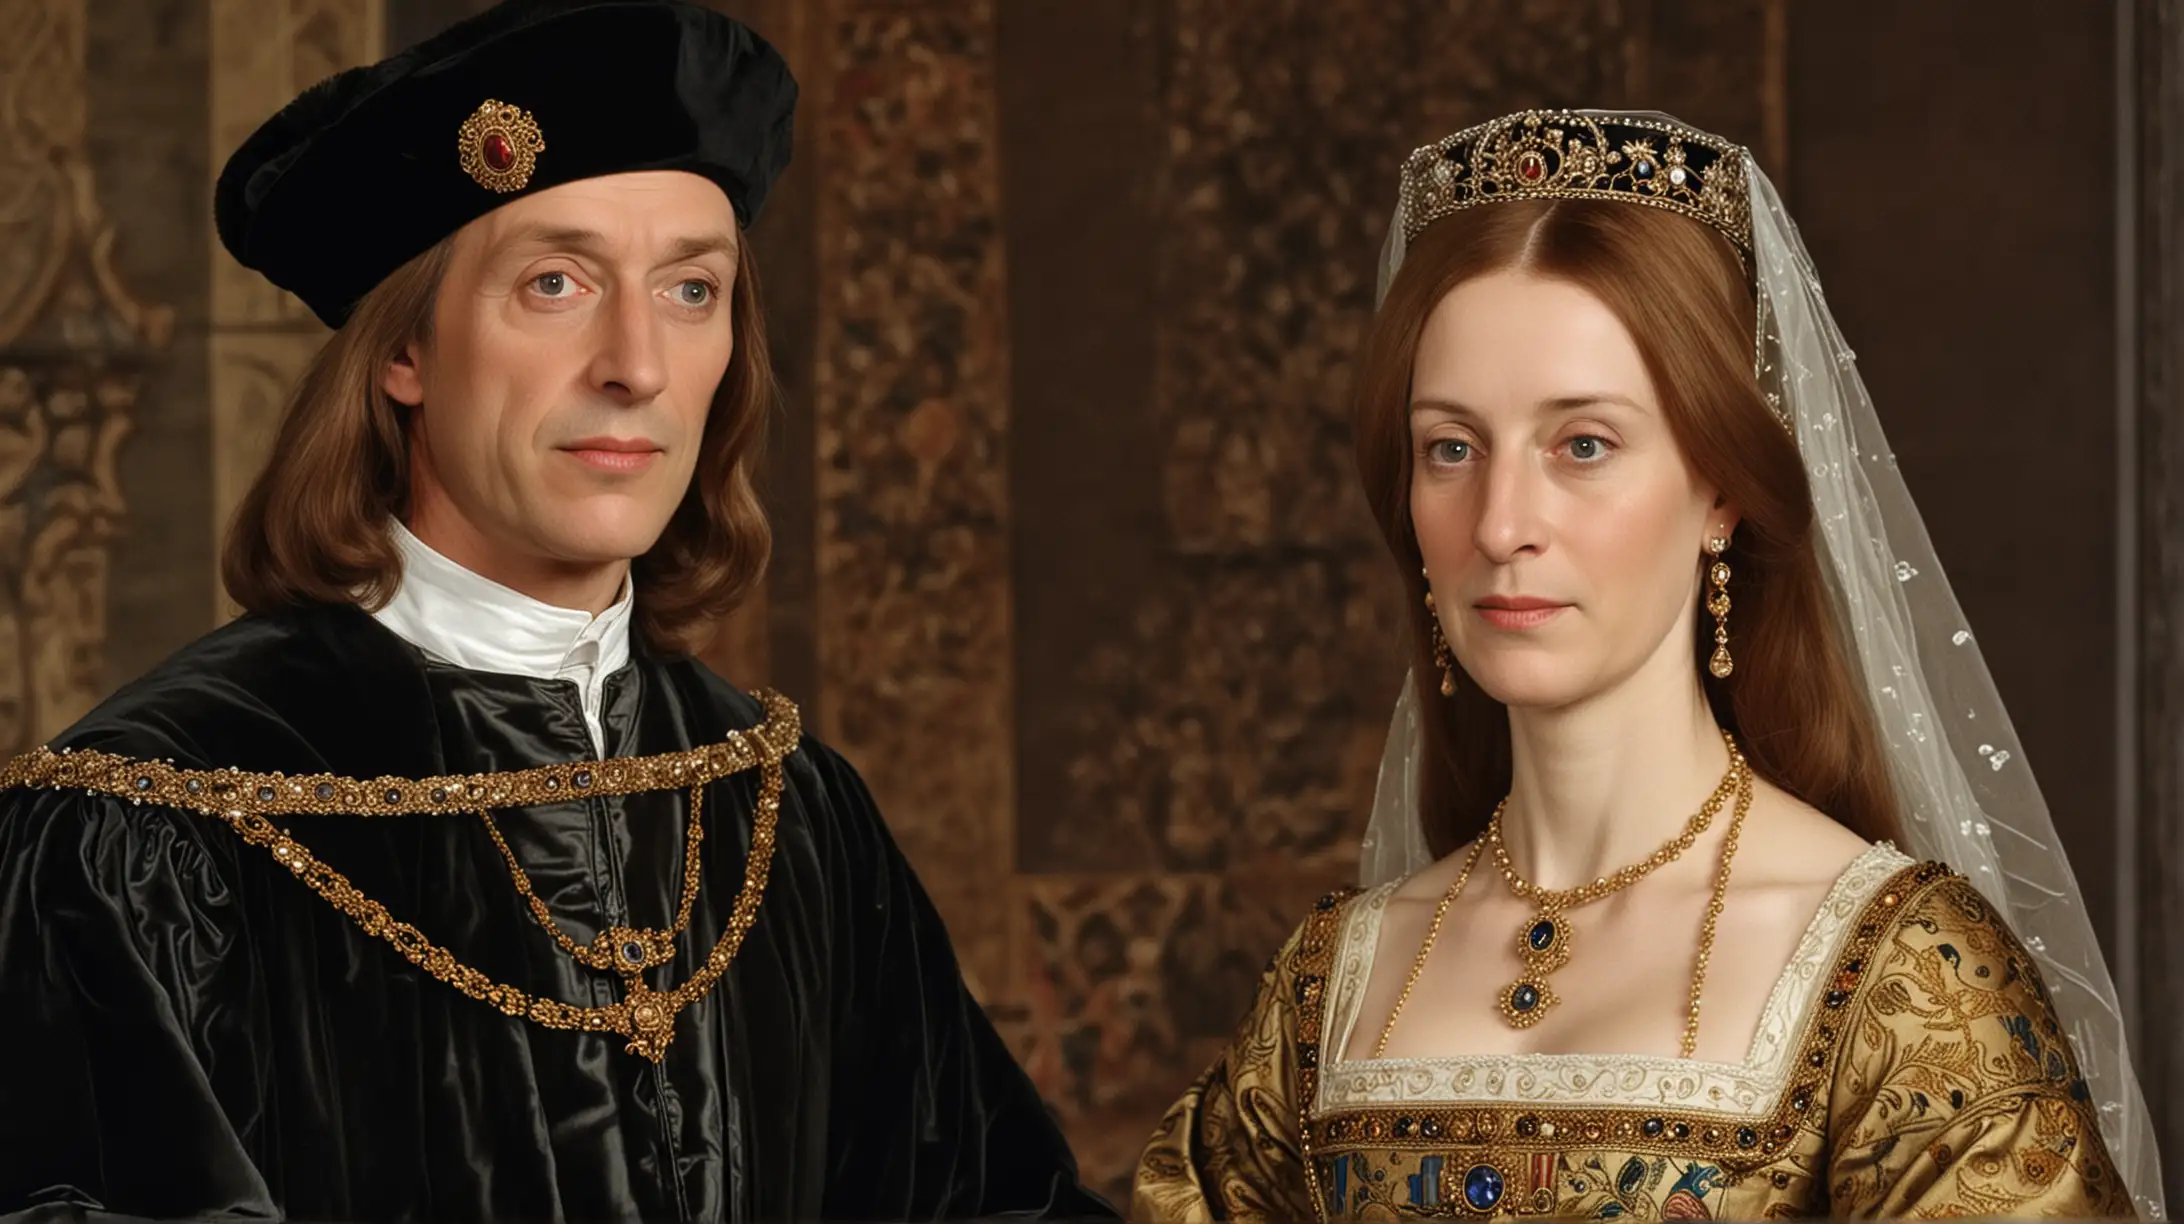  Enrique septimo y su esposa Isabel de York.